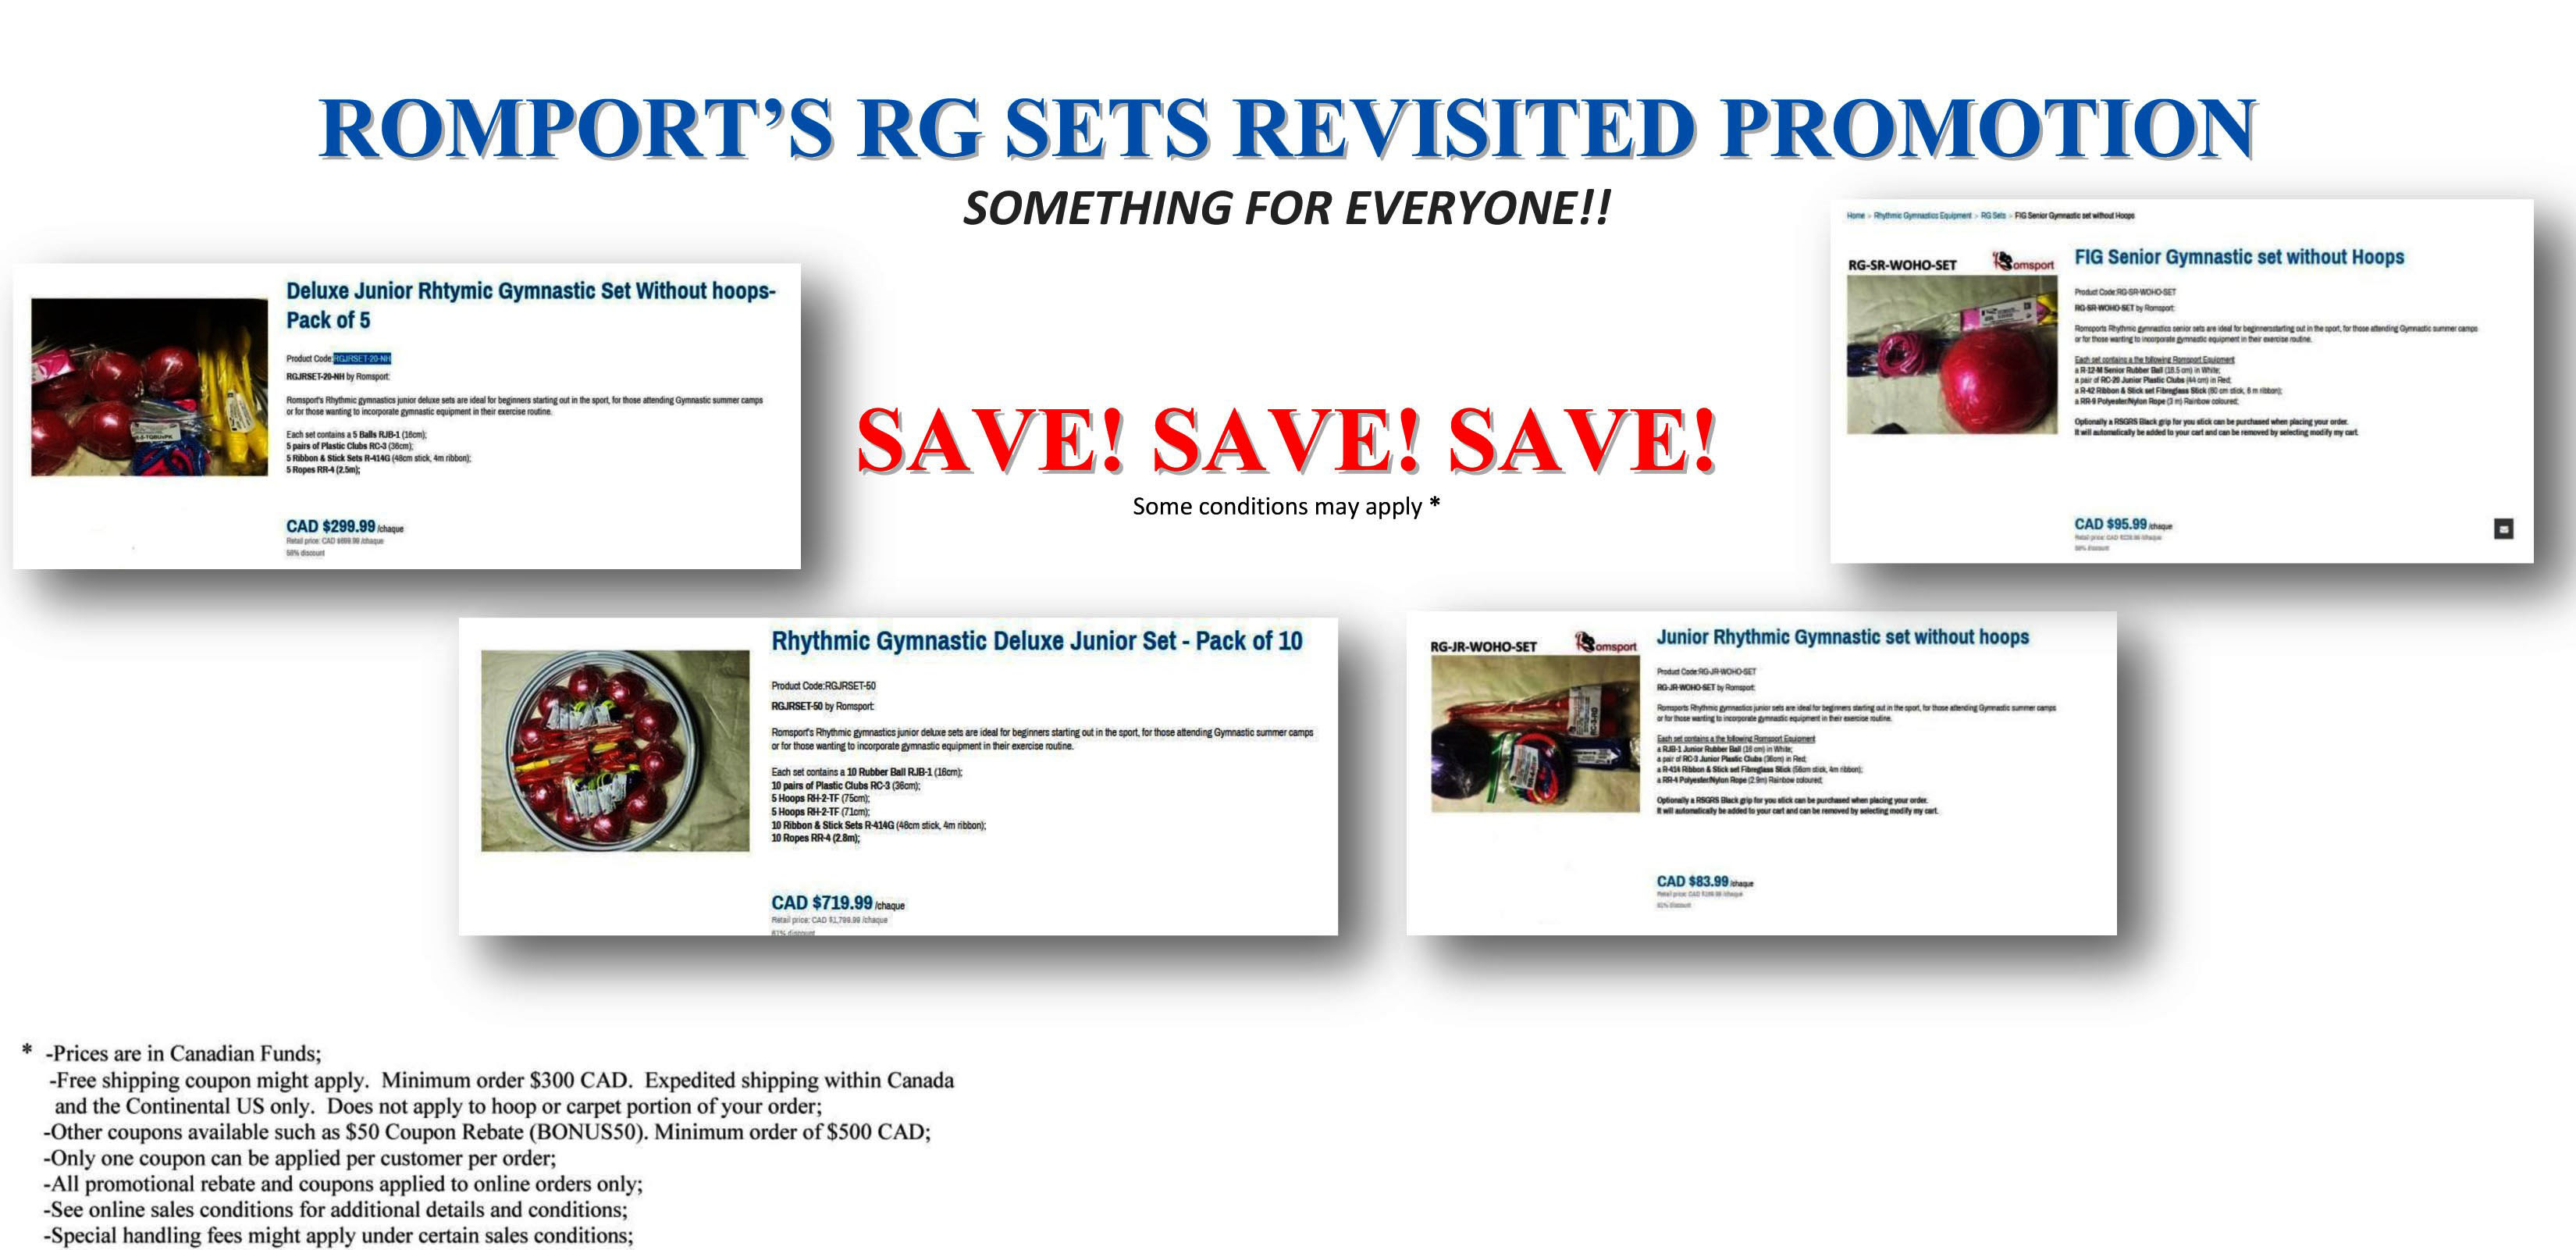 RG_Sets revisited_en 211029